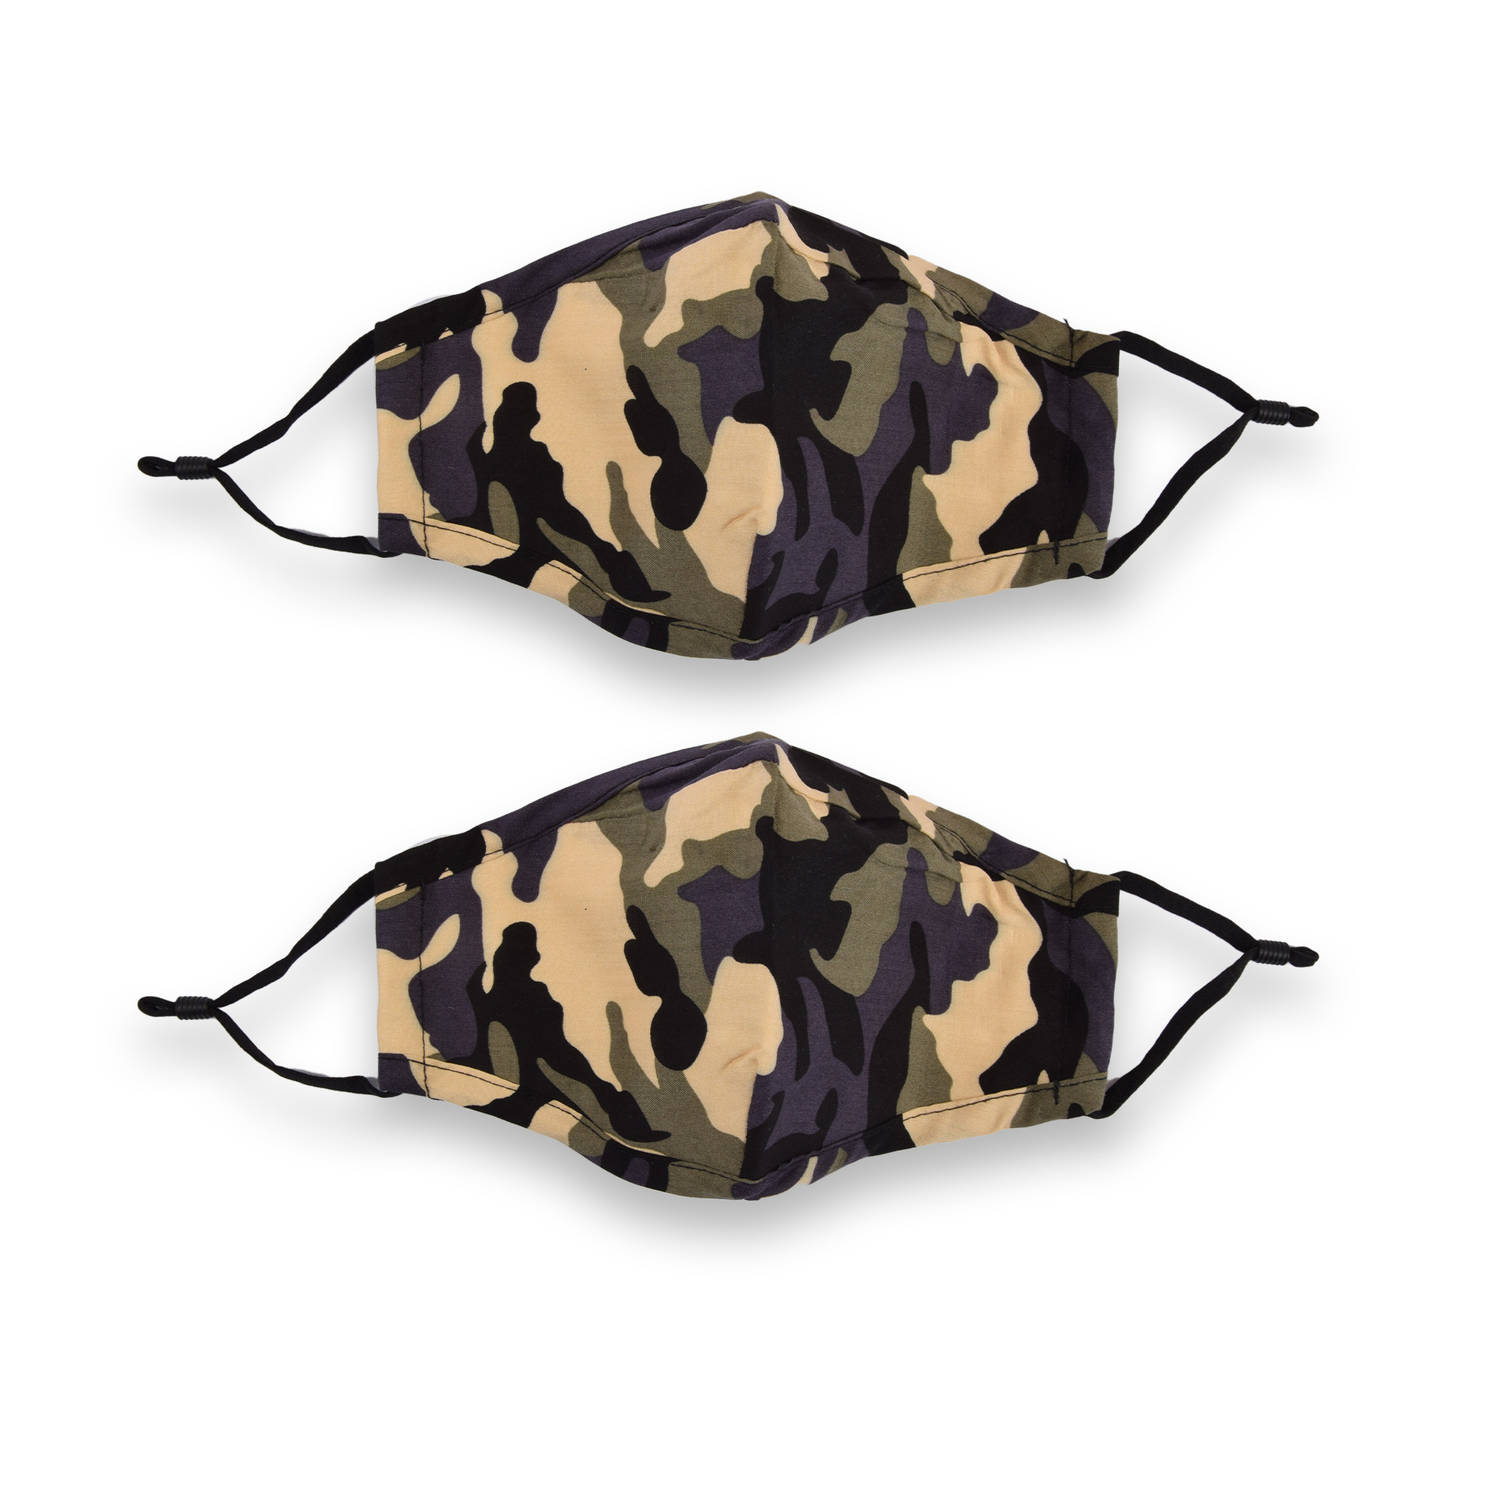 2-Stuks Camouflage Mondkapje wasbaar | 100% Katoen | Stoer & Comfortabel met Elastiek | 24cm x 15,5cm | Geschikt voor Volwassenen & Kinderen | Niet-Medisch, Herbruikbaar | Groen Ca